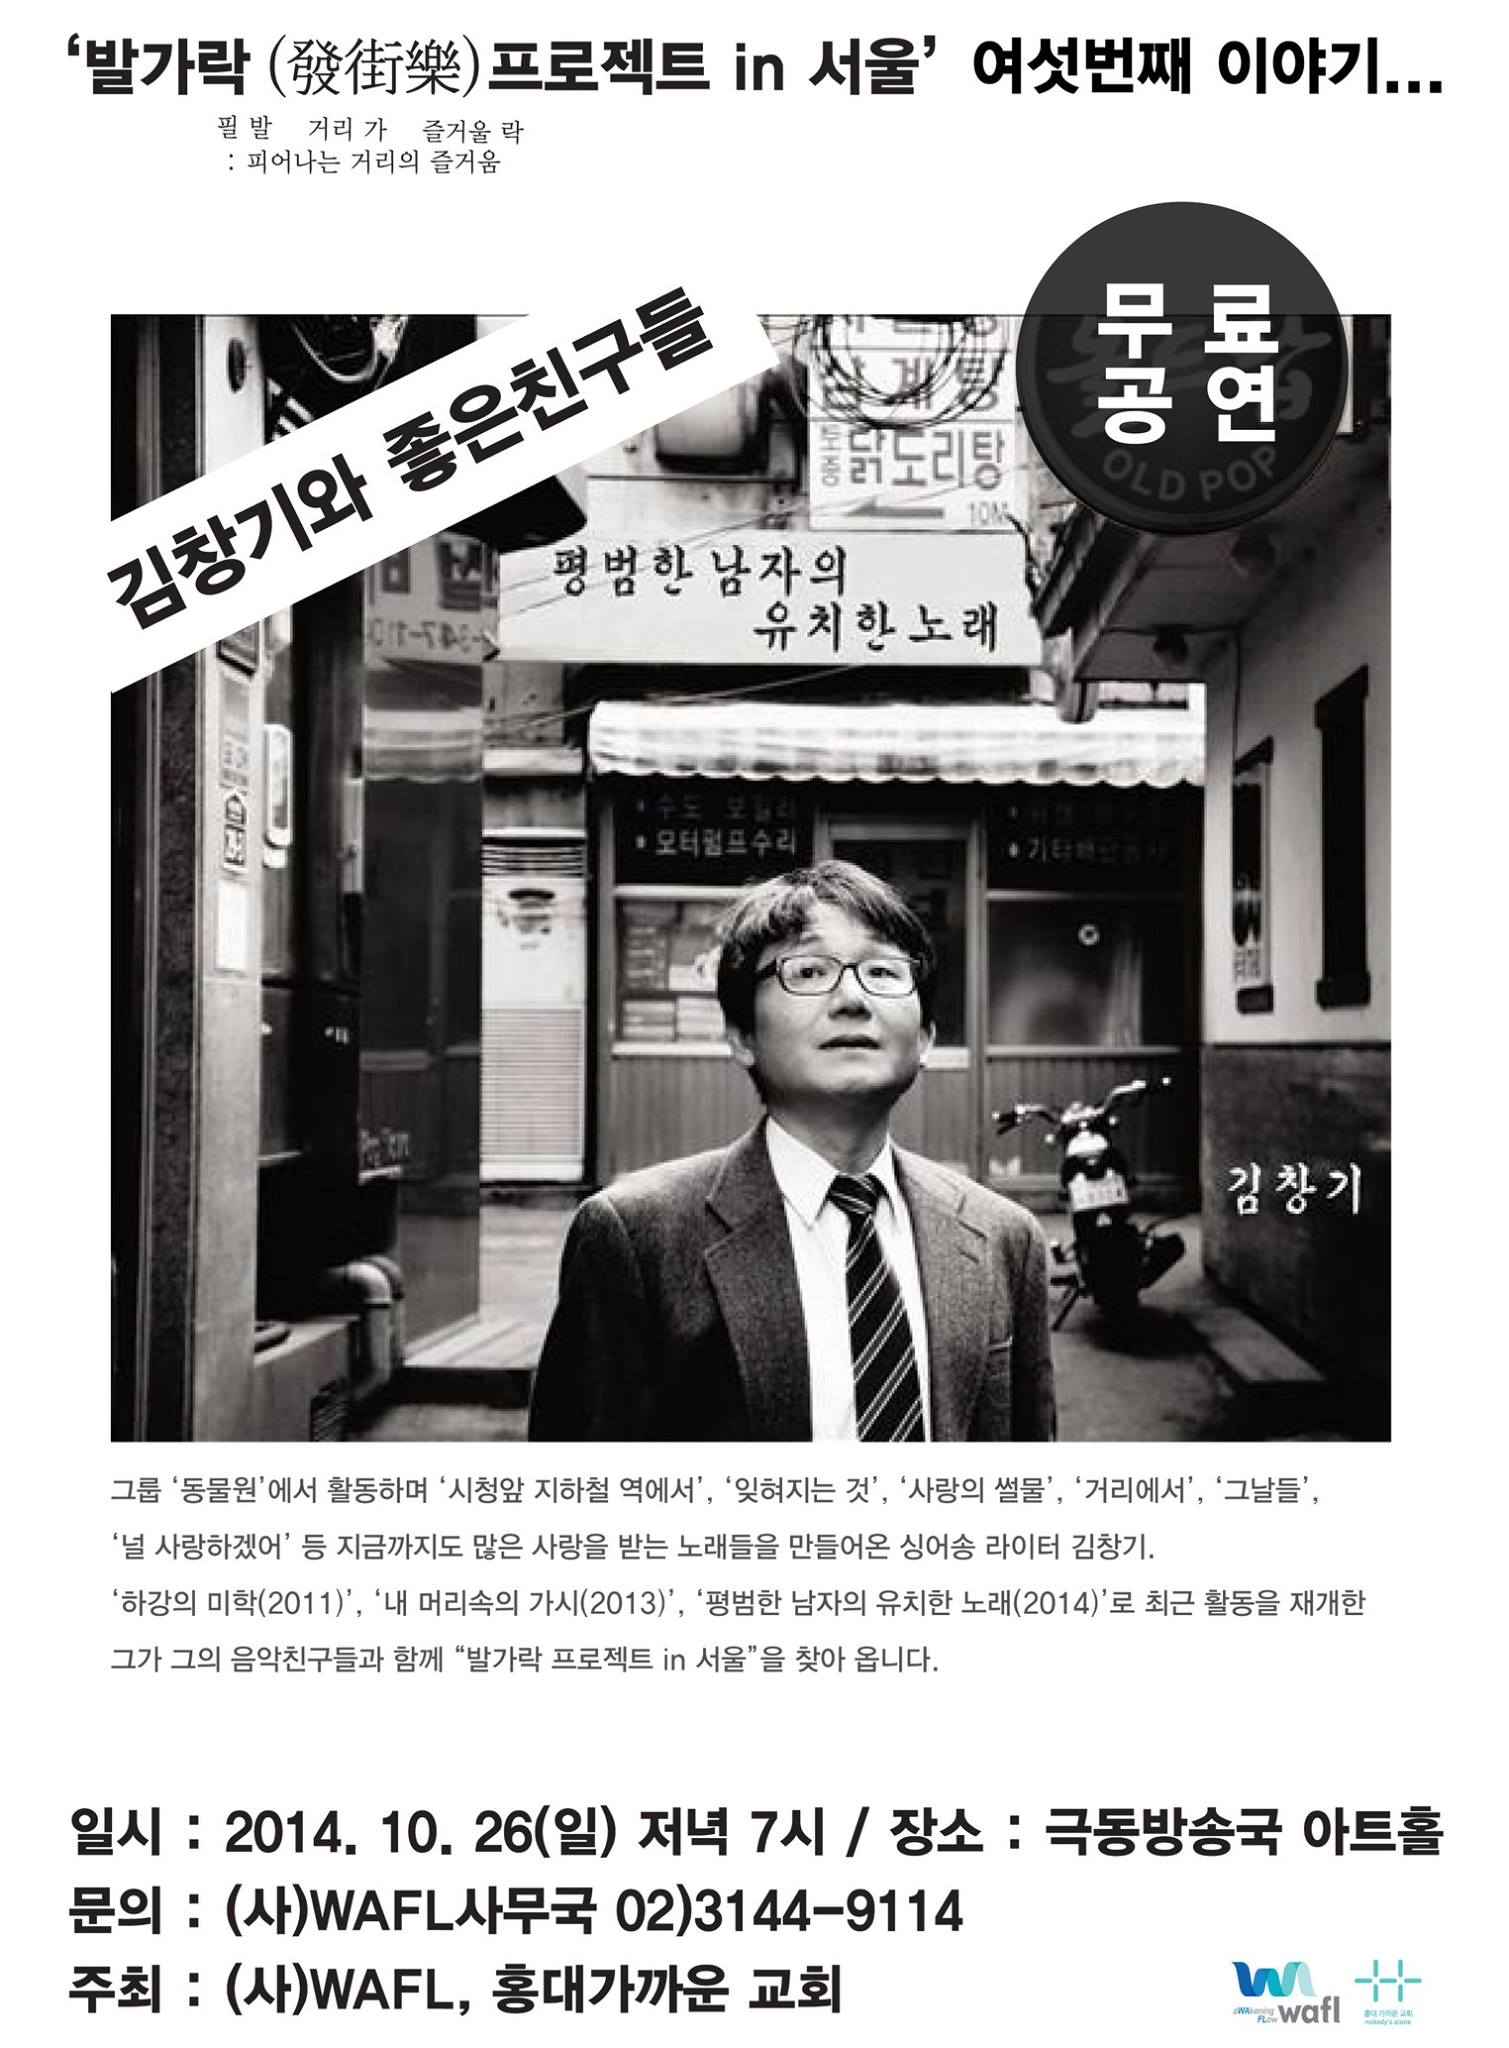 2014년 10월 26일 김창기와 좋은친구들 무료공연 포스터.jpg